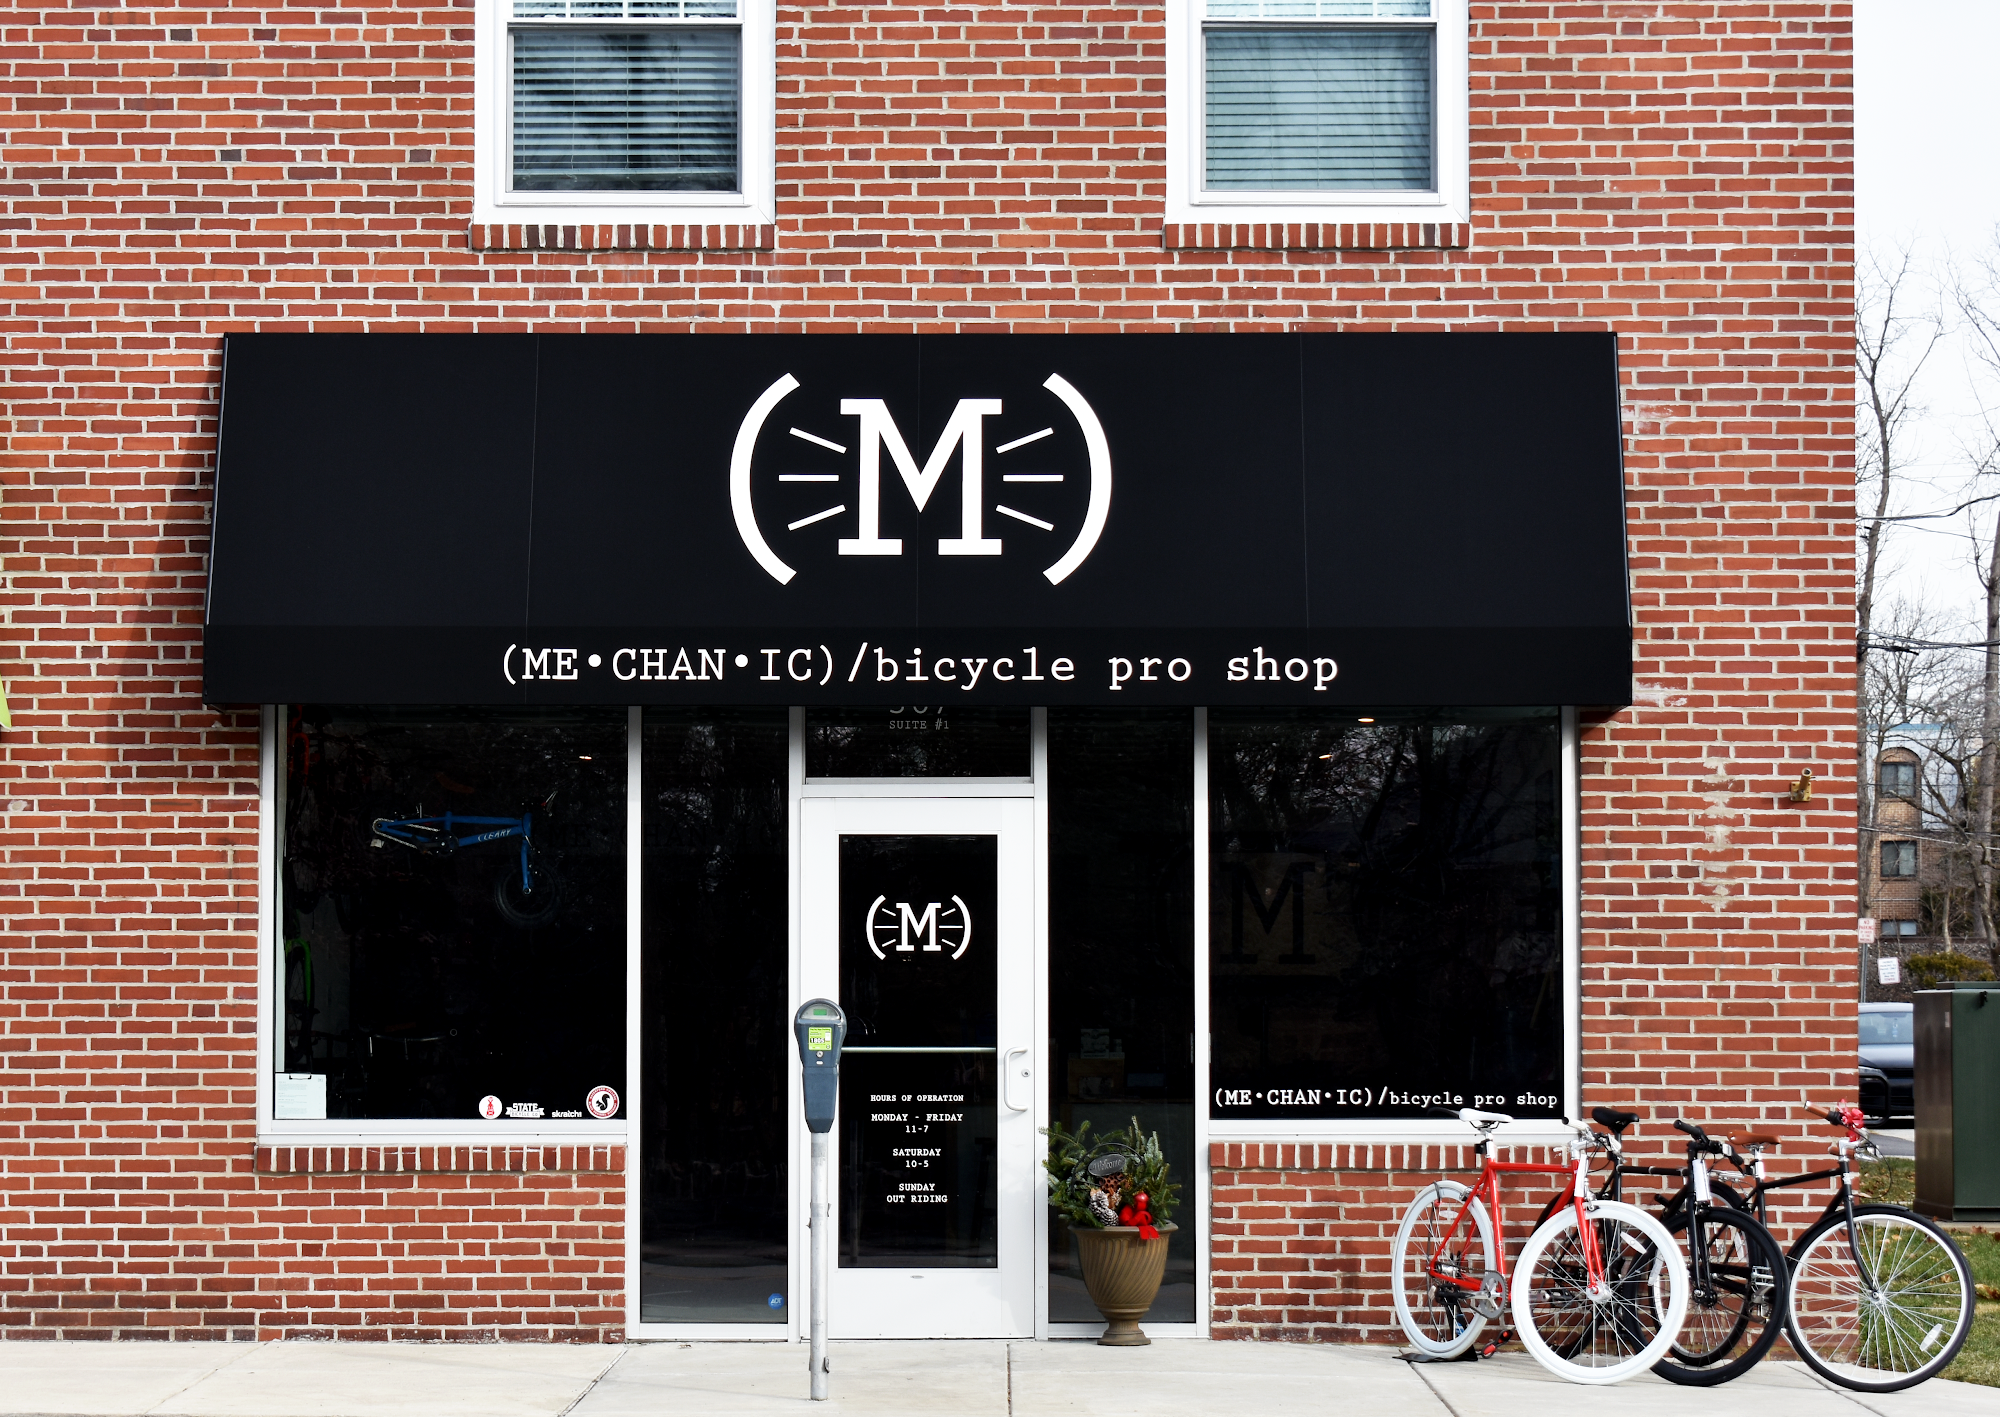 Mechanic / bicycle pro shop